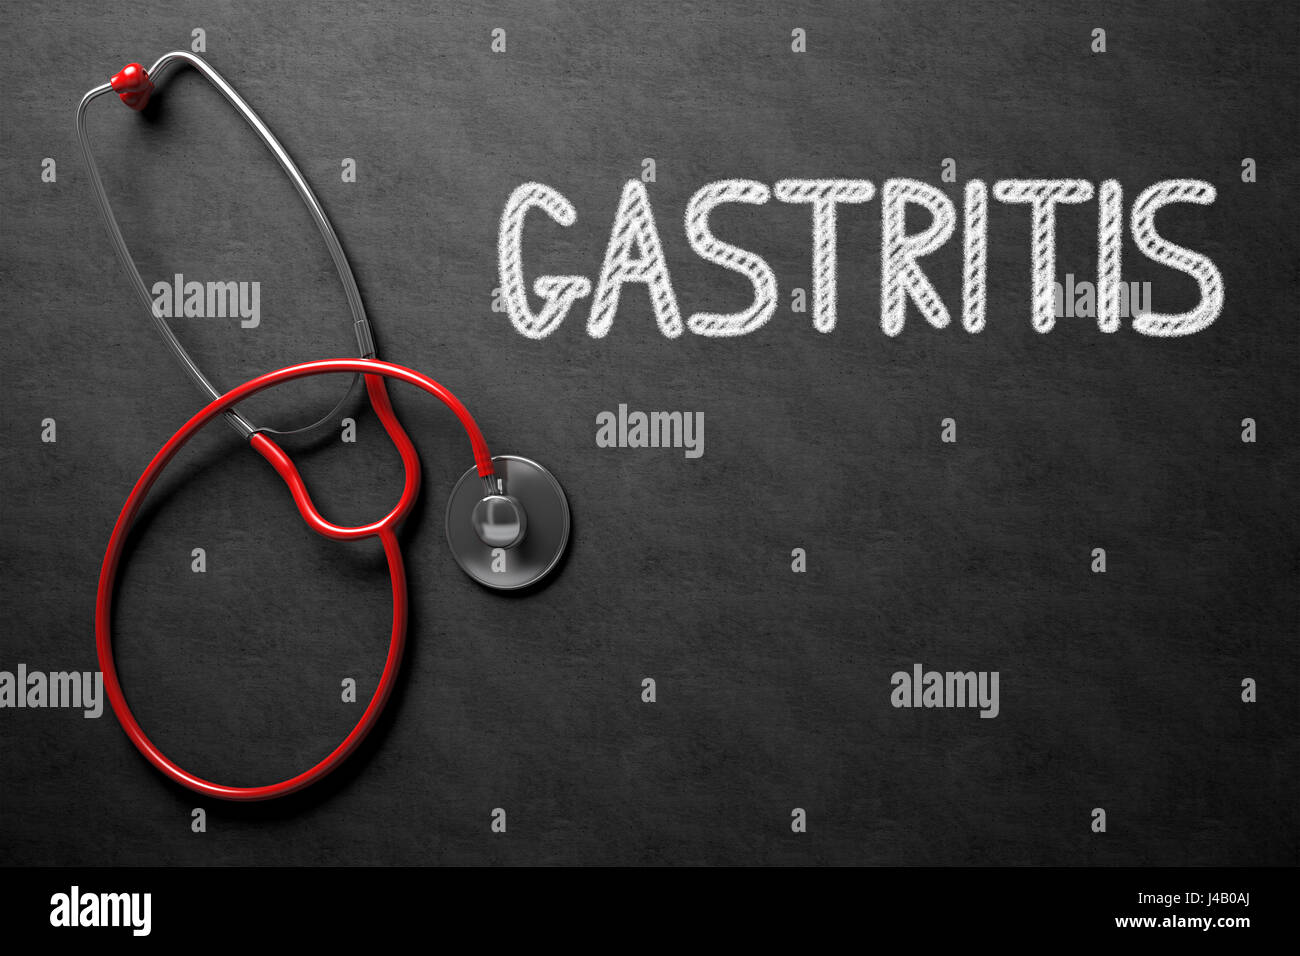 Gastritis - Text on Chalkboard. 3D Illustration. Stock Photo